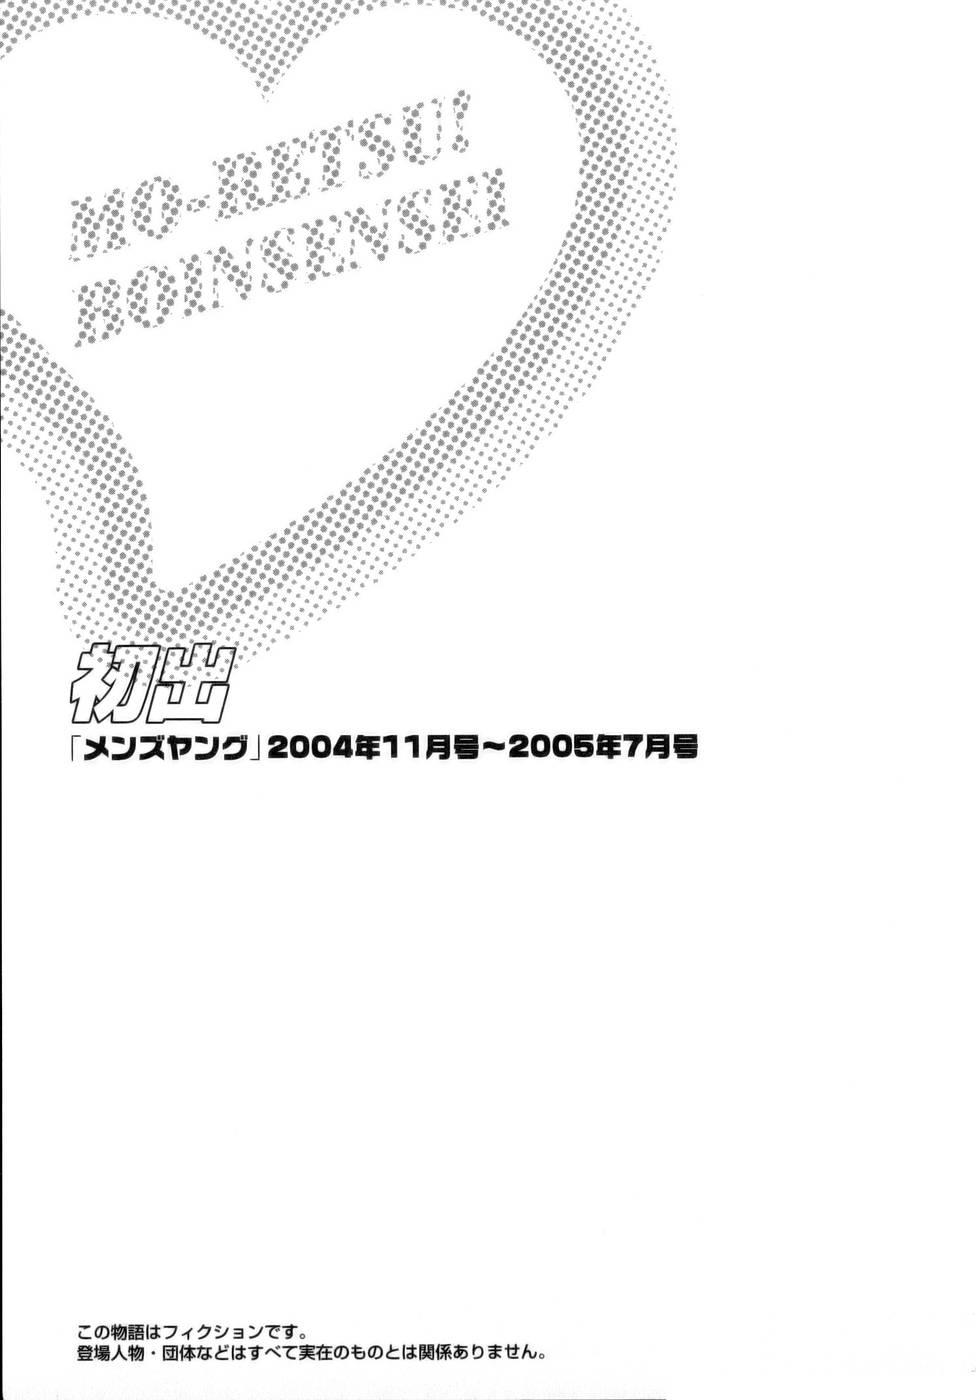 [Hidemaru] Mo-Retsu! Boin Sensei (Boing Boing Teacher) Vol.1 192